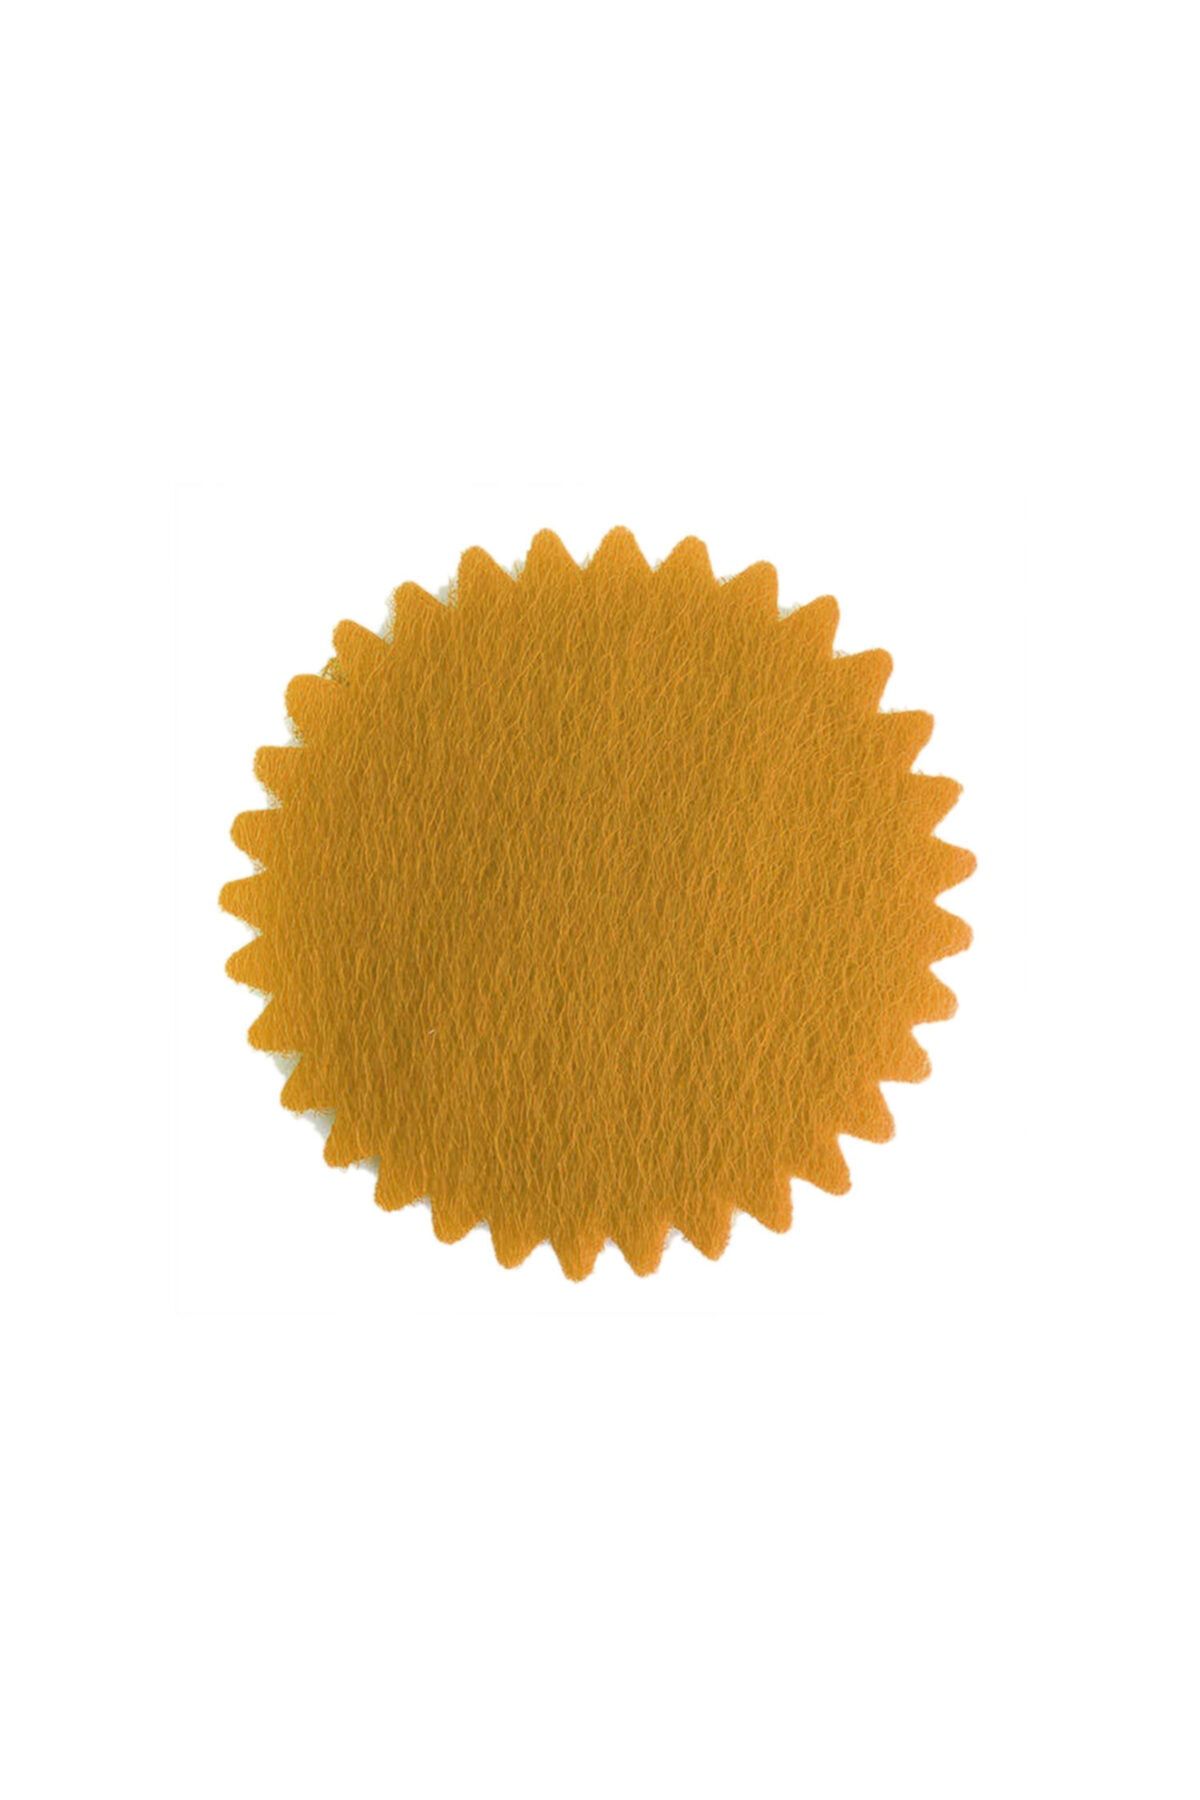 Eminonutoptanci Organze Yuvarlak Hazır Kesilmiş Tül File Modeli 22 cm - 100 Adet Altın